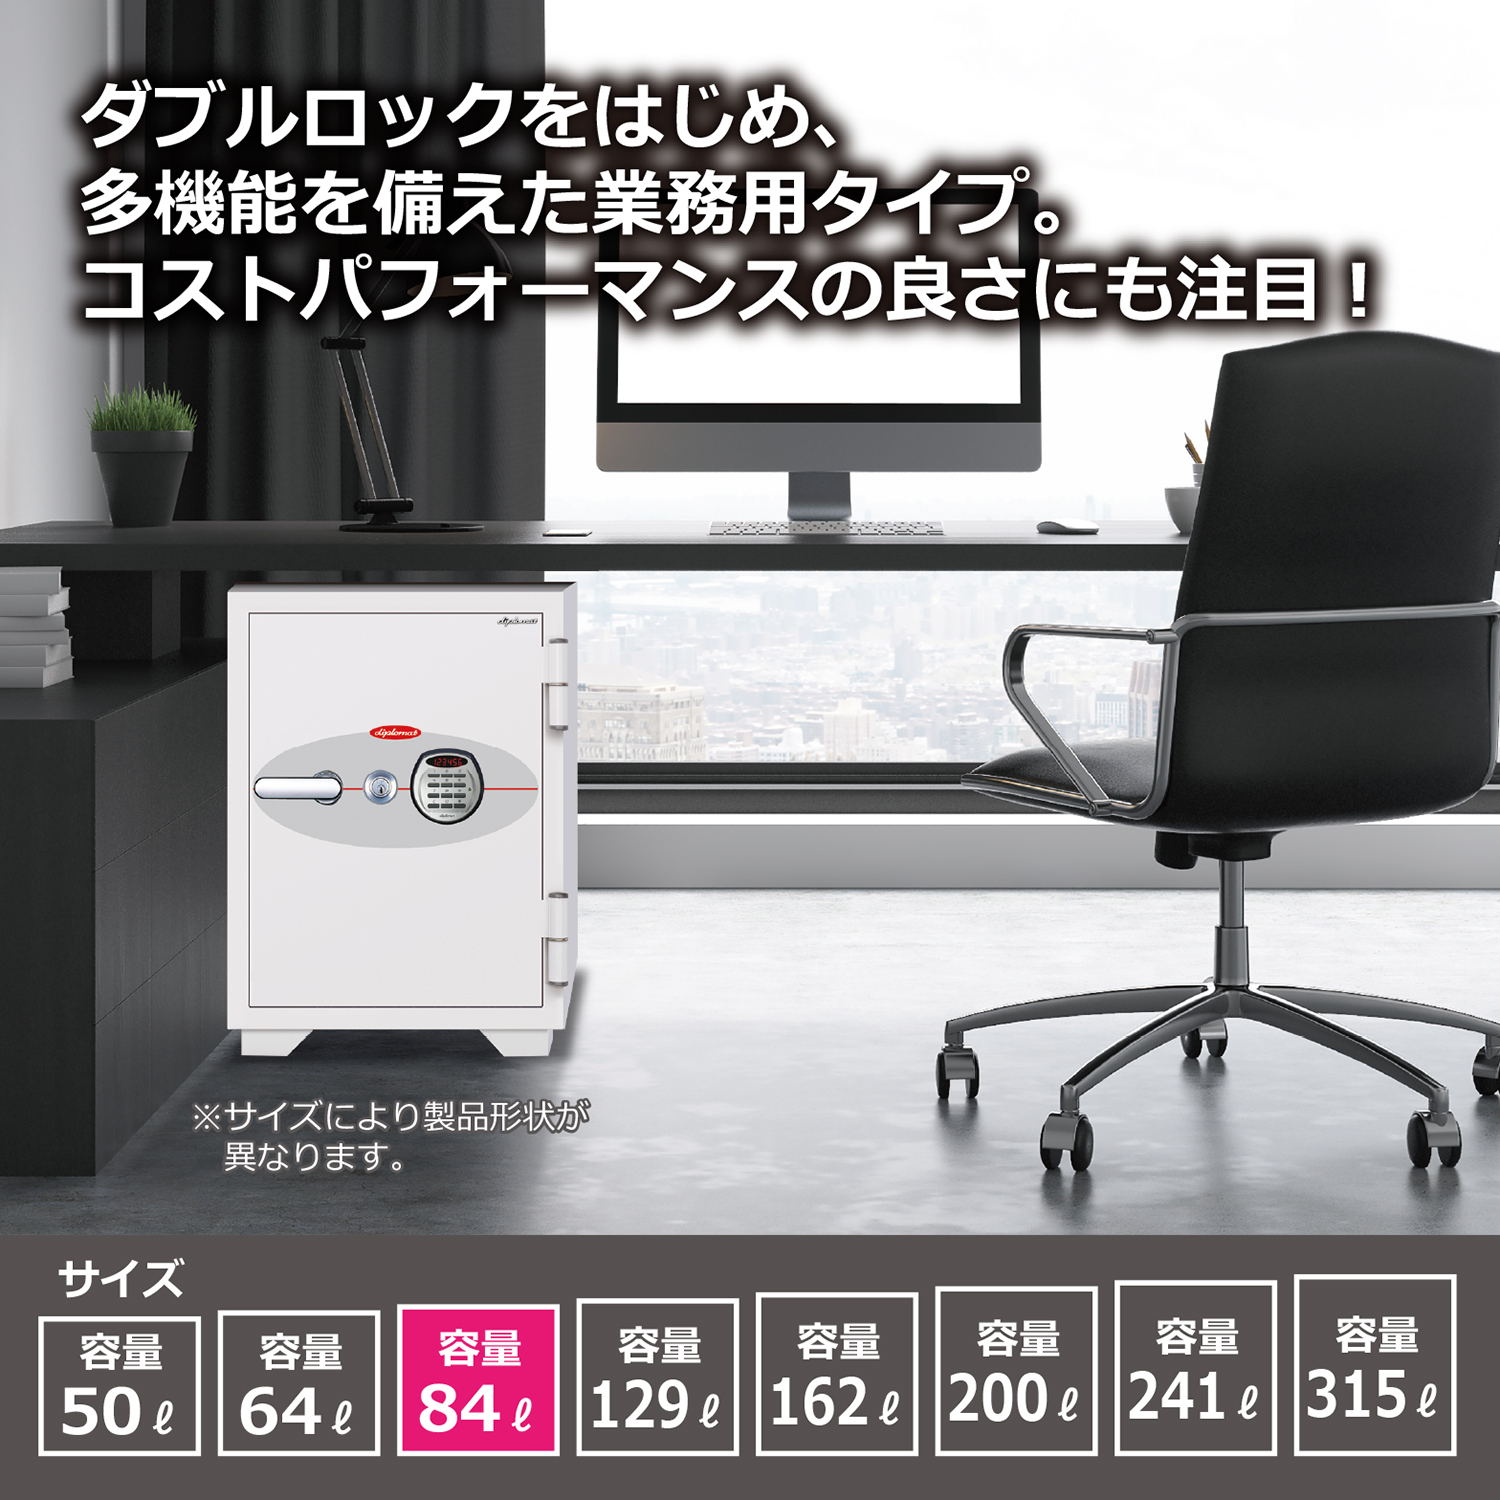 ダブルロック式 オフィス用耐火金庫 84L（W520×D560×H876）